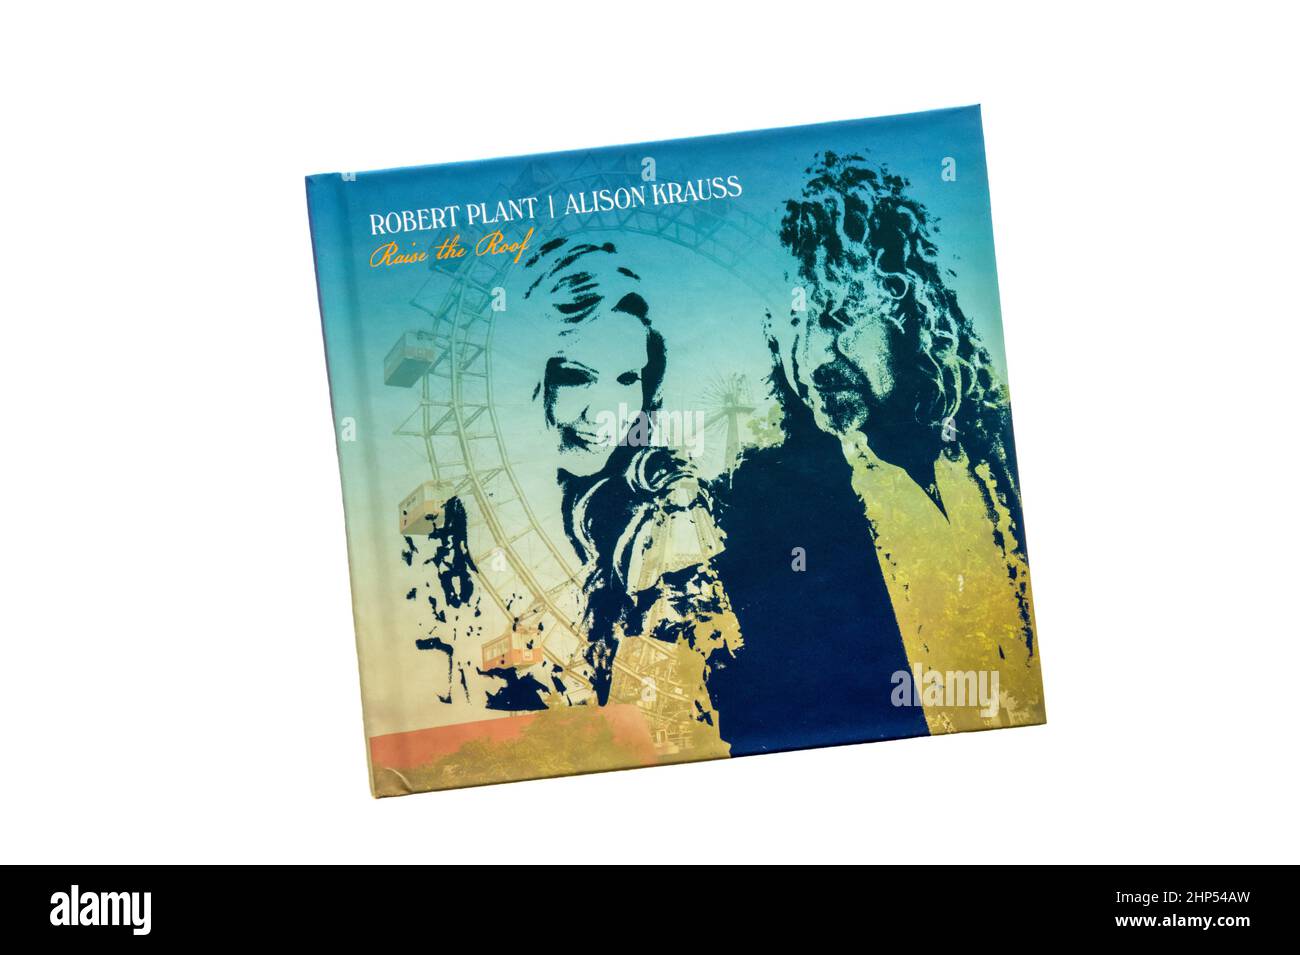 Raise the Roof war das Studioalbum von 2nd des britischen Singer-Songwriters Robert Plant und der amerikanischen Country-Sängerin Alison Krauss. Es wurde 2021 veröffentlicht. Stockfoto